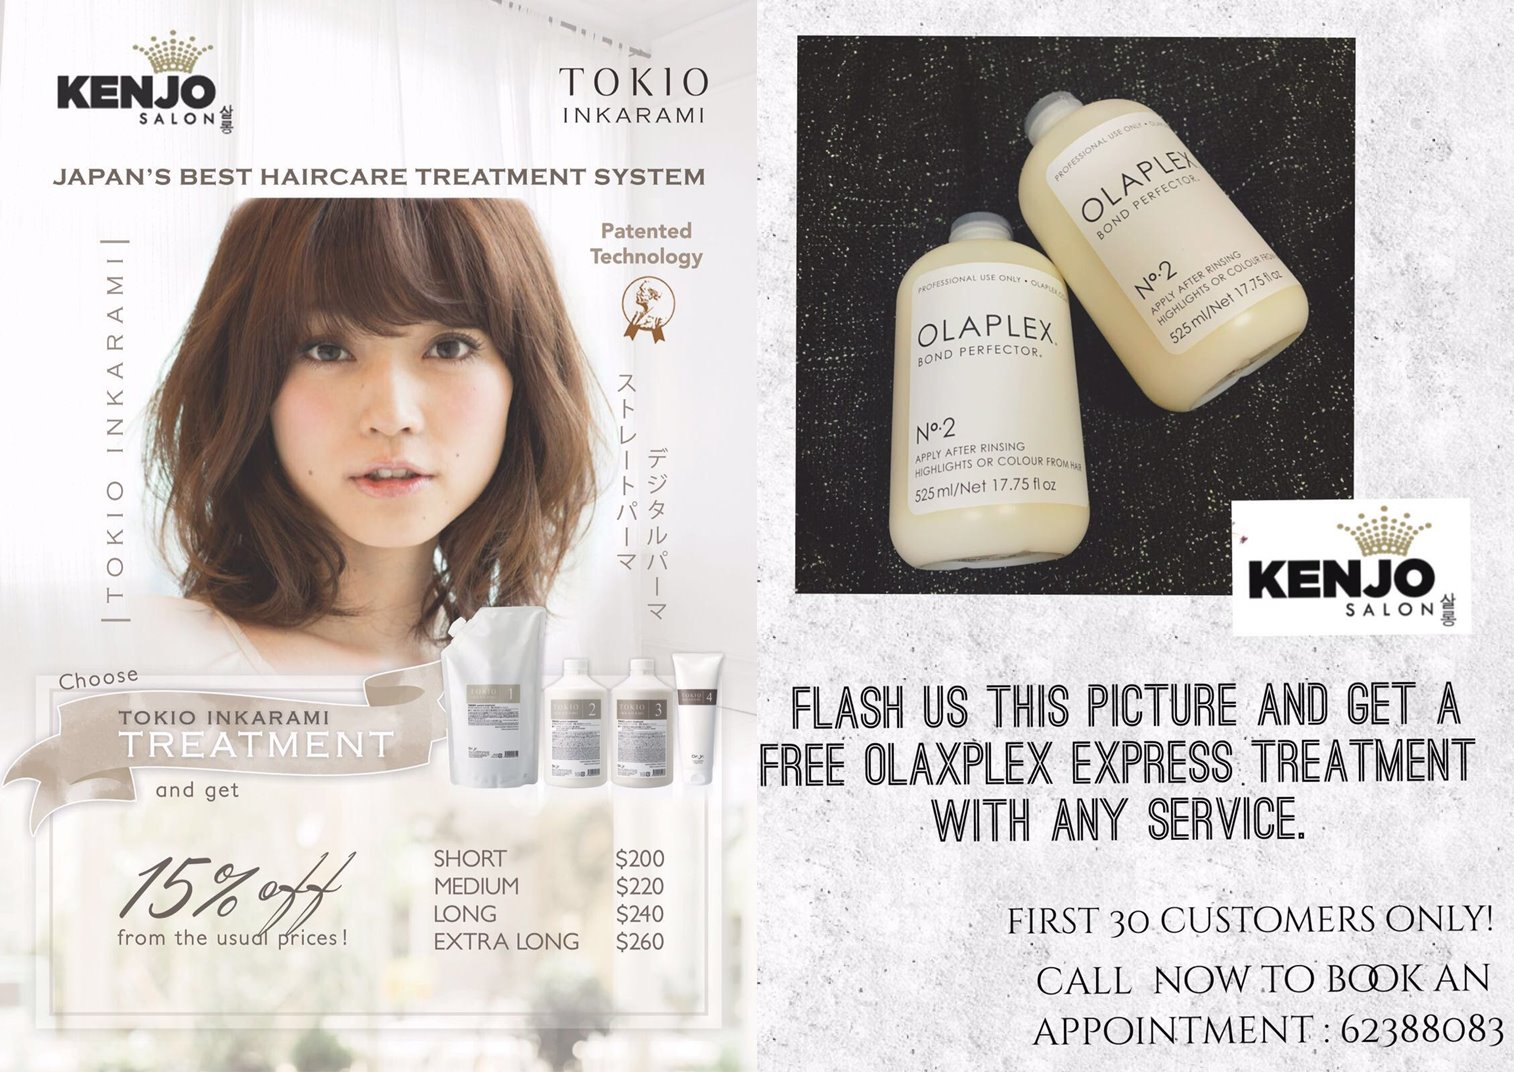 Kenjo Salon Promotion